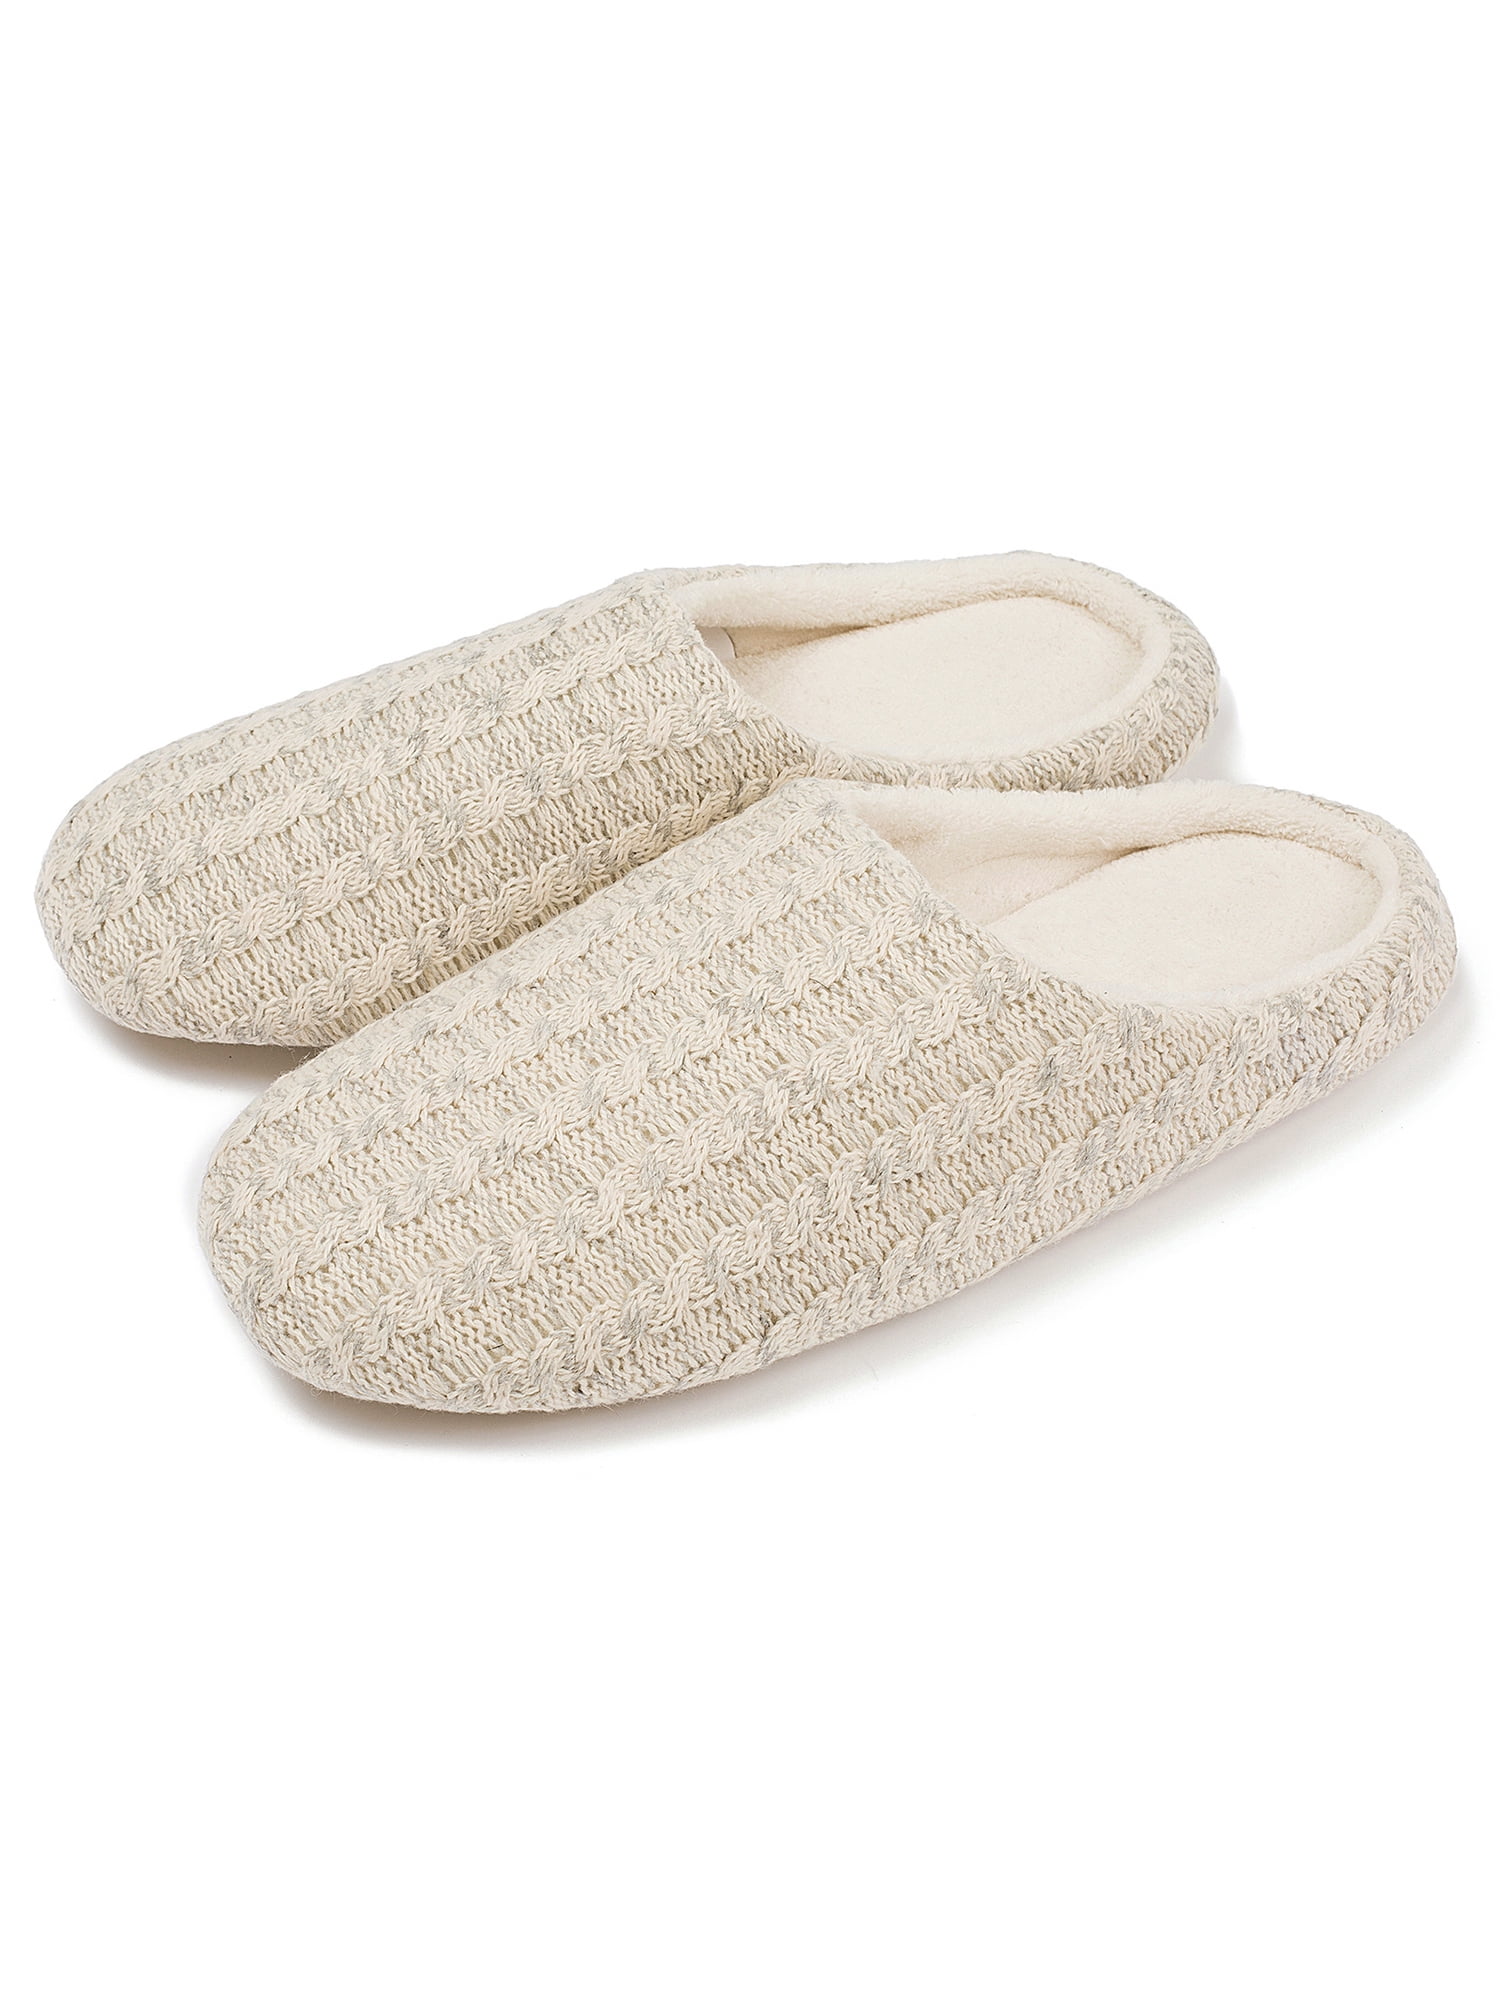 Youloveit - Cotton Warm Indoor Slippers 